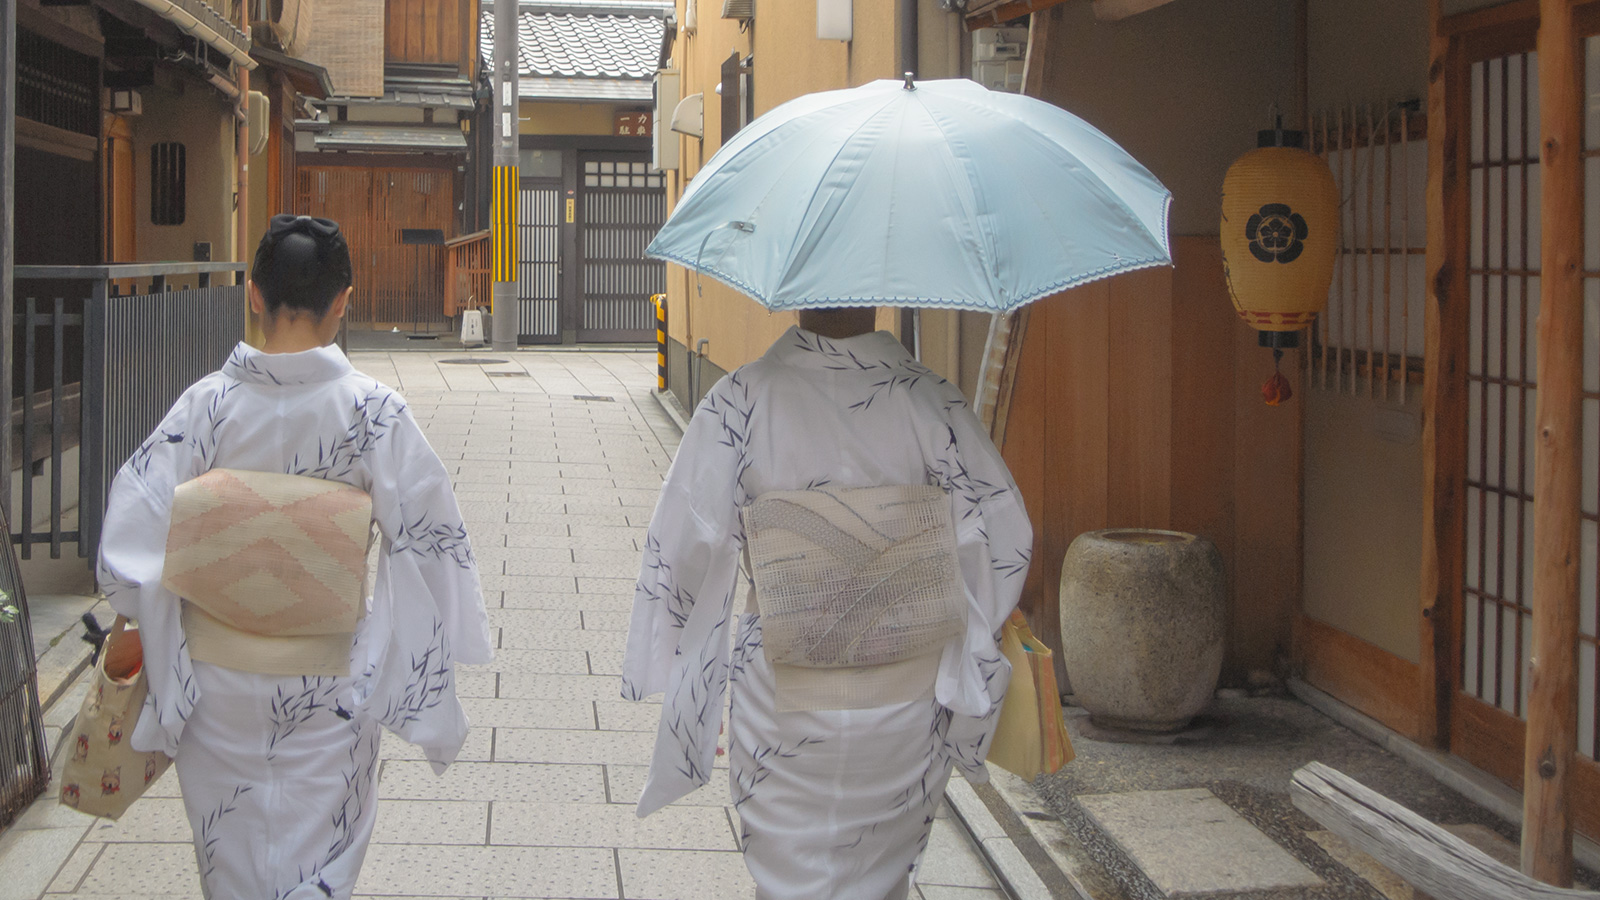 祇園の路地ですれ違った透明感のあるうしろ姿 - -京都、祇園- -